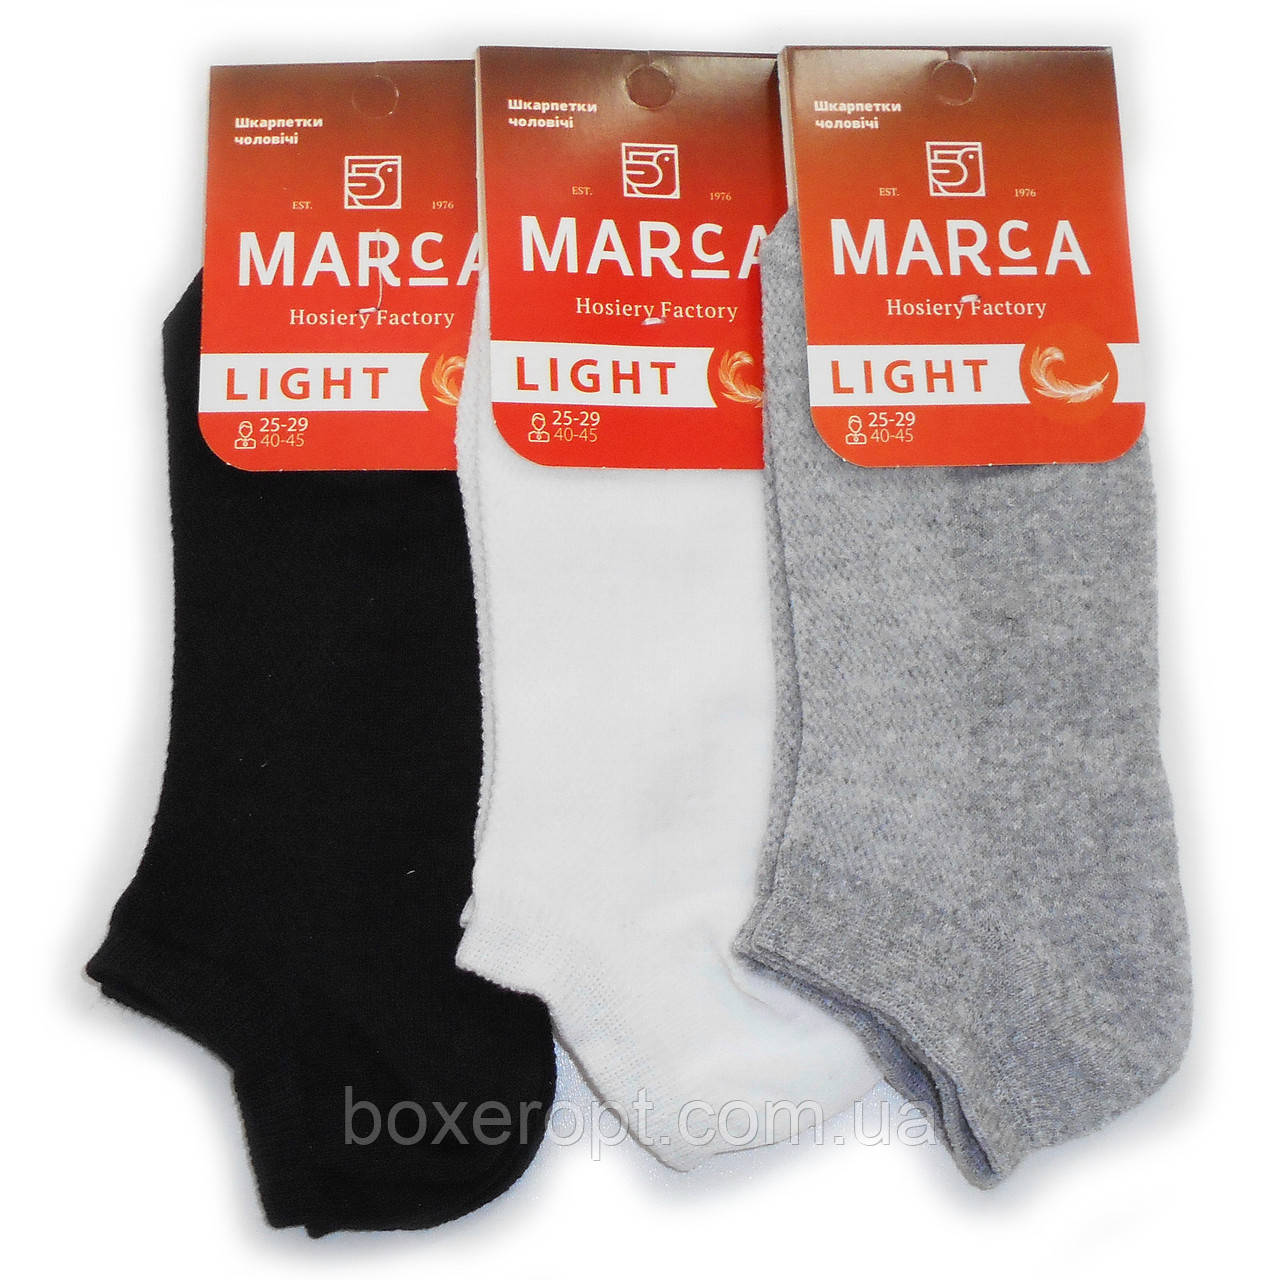 Чоловічі короткі шкарпетки з сіткою Marca - 11.00 грн./пара (ЧБС)